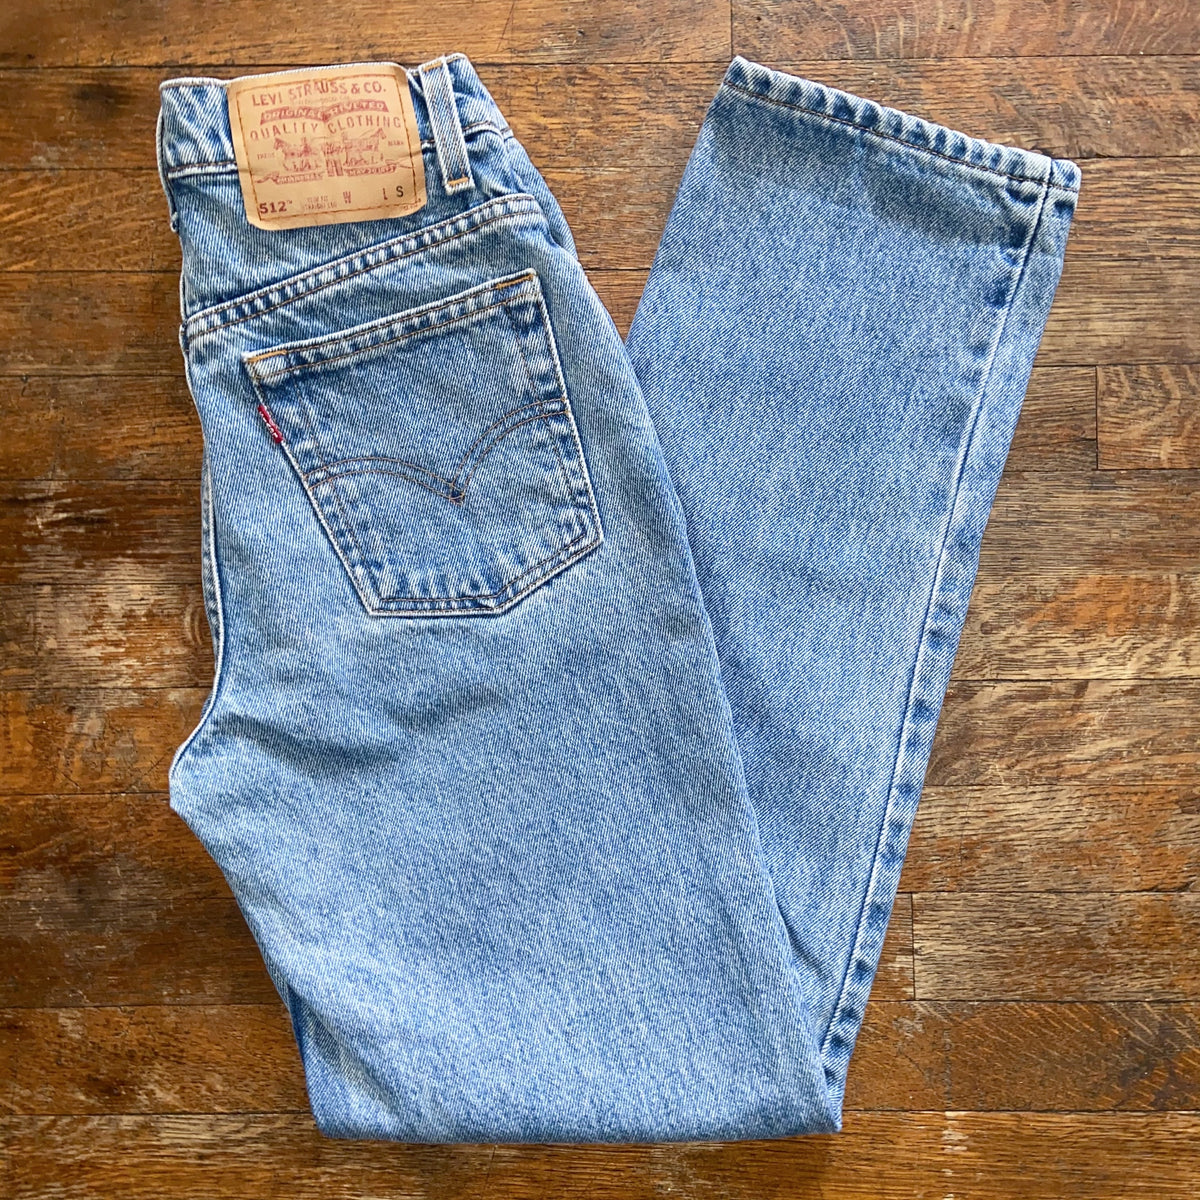 Vintage Levis Jeans Size 24-25 / Deadstock Levis 535 Jeans Light